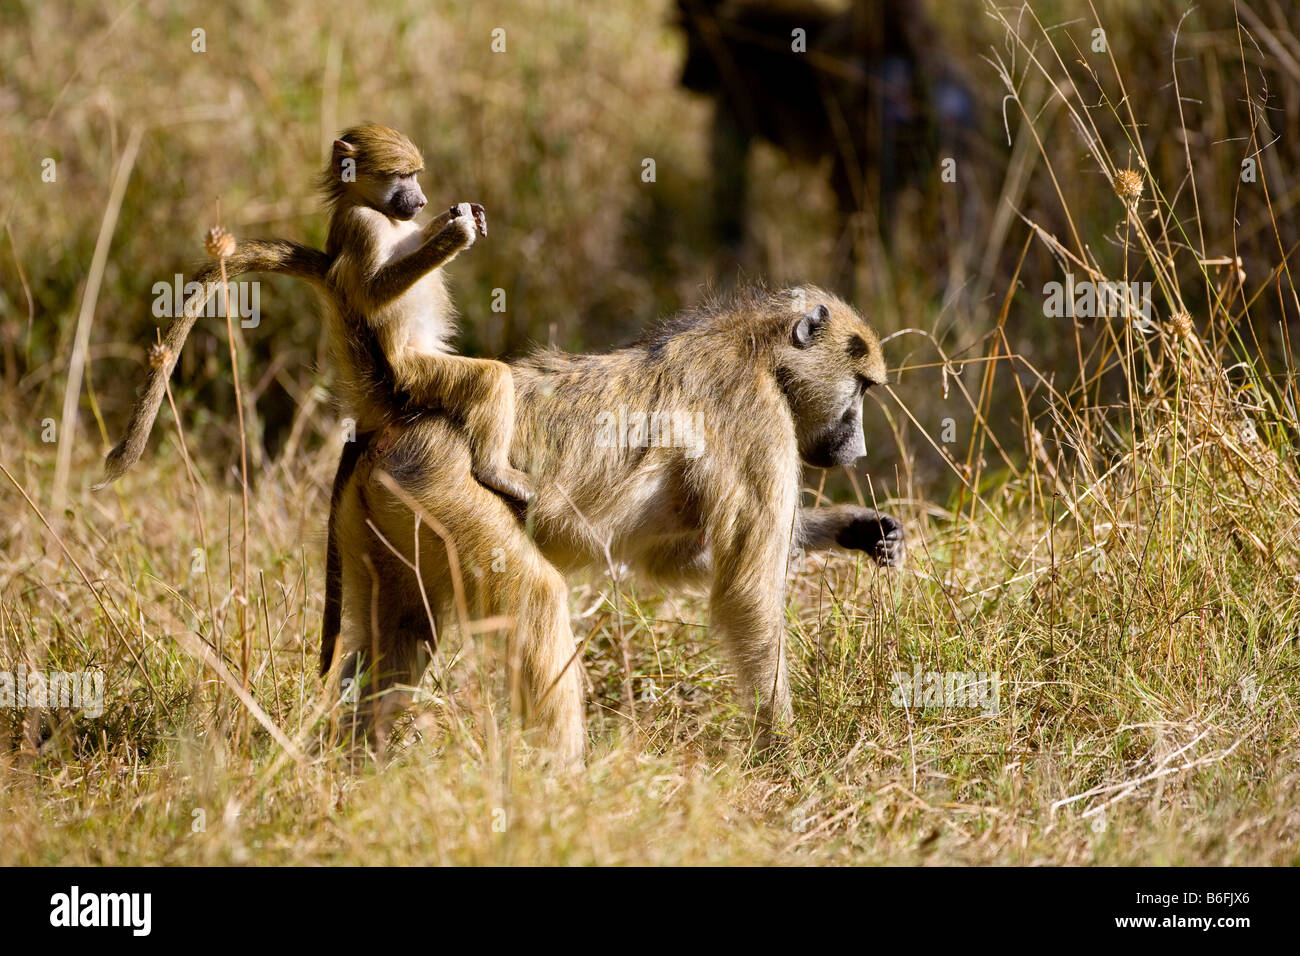 Jeune babouin (Papio) mères sur son dos, Okavango Delta, Botswana, Africa Banque D'Images